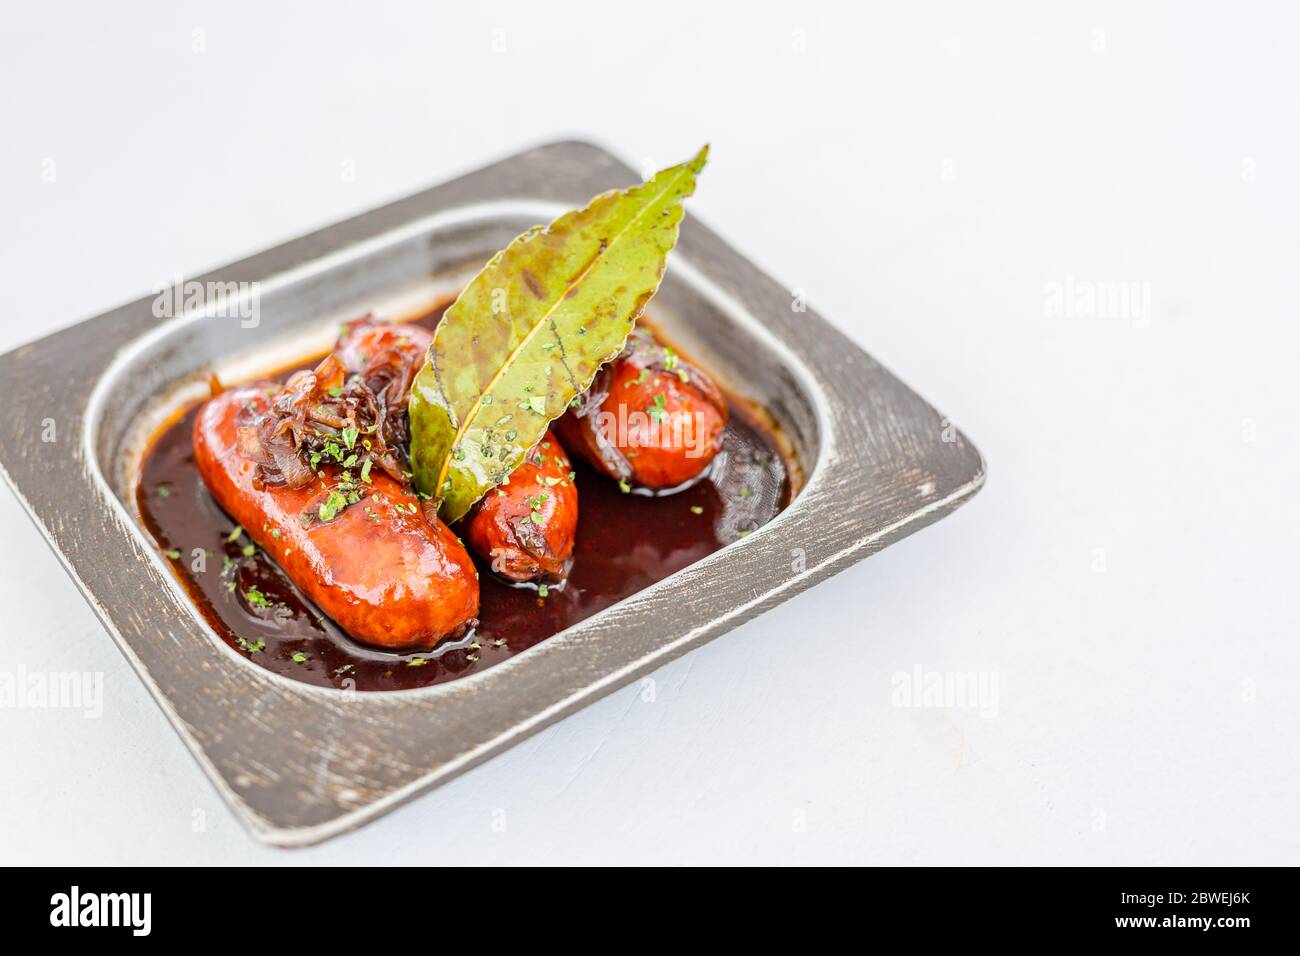 Bratpfanne mit leckeren gegrillten Würstchen auf dem Tisch. Gastronomie kulinarische Vorspeise in Metallpfanne zubereitet Stockfoto